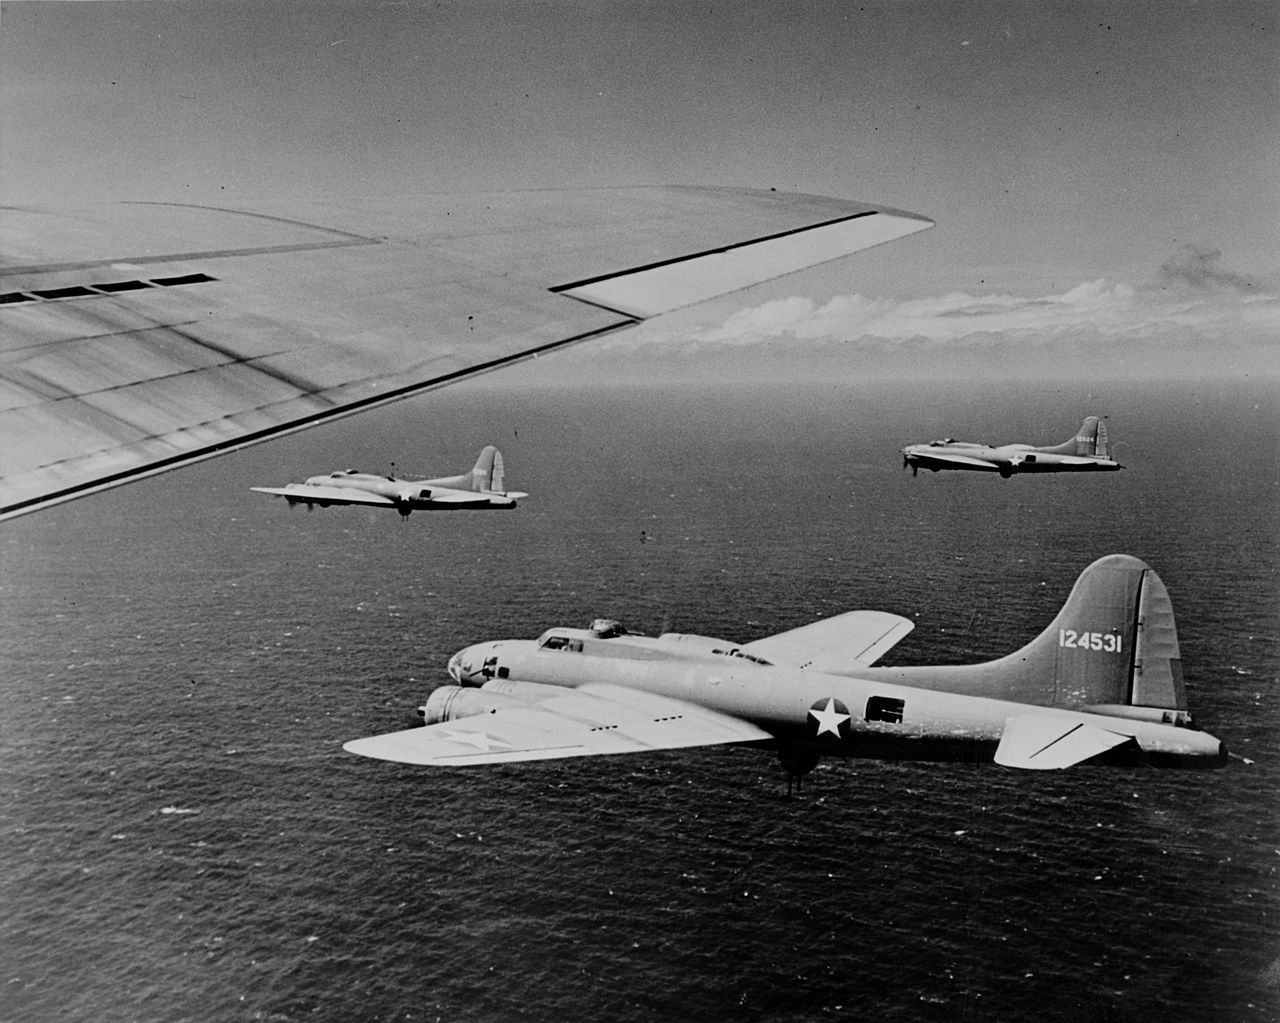 B-17 #41-24531